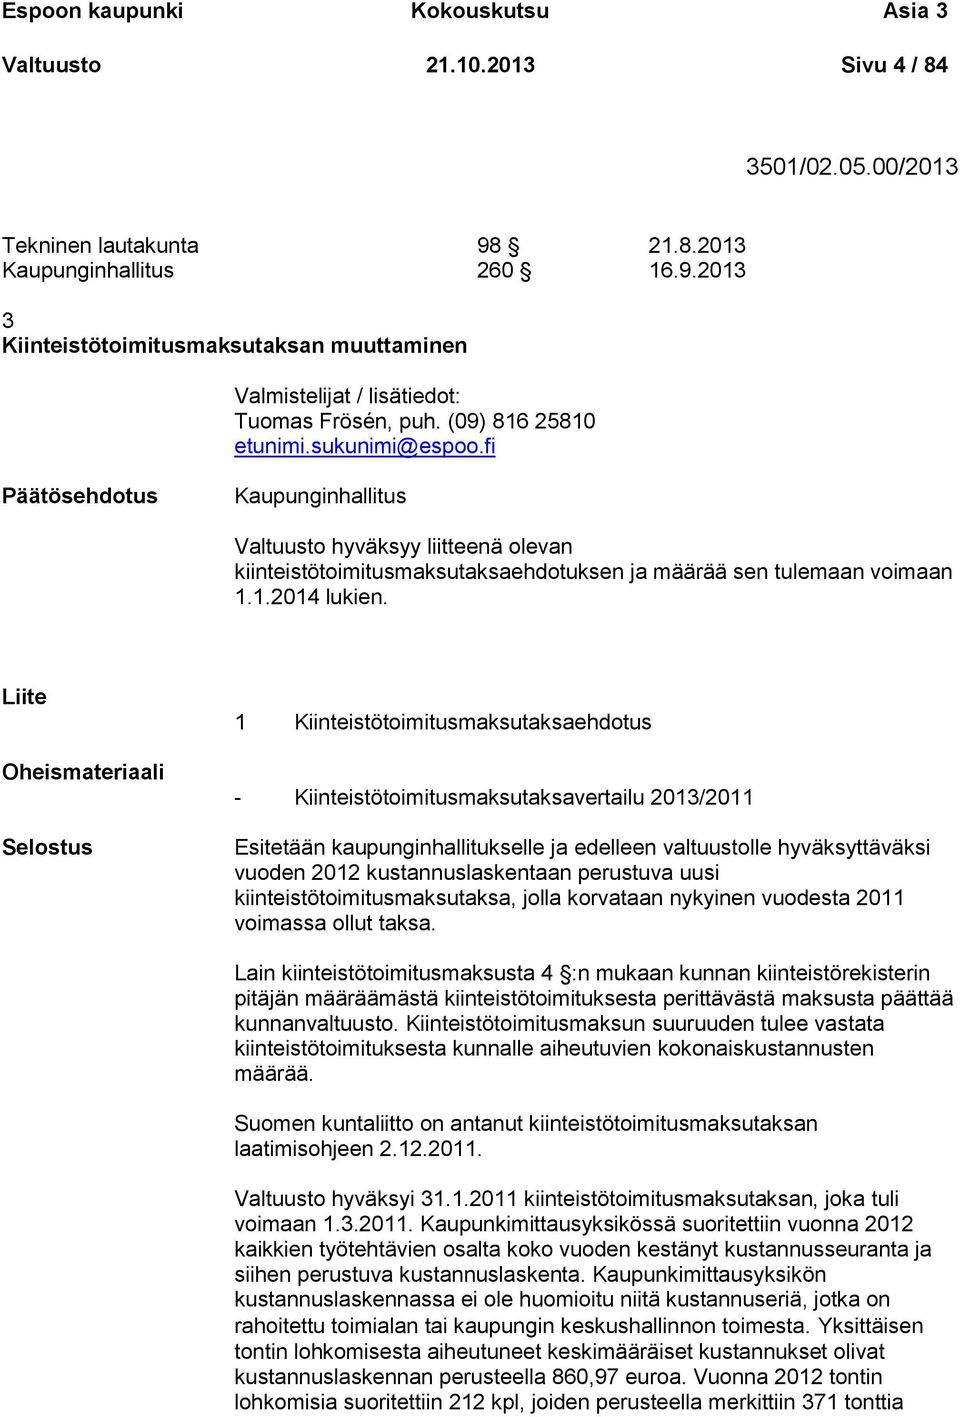 fi Kaupunginhallitus Valtuusto hyväksyy liitteenä olevan kiinteistötoimitusmaksutaksaehdotuksen ja määrää sen tulemaan voimaan 1.1.2014 lukien.